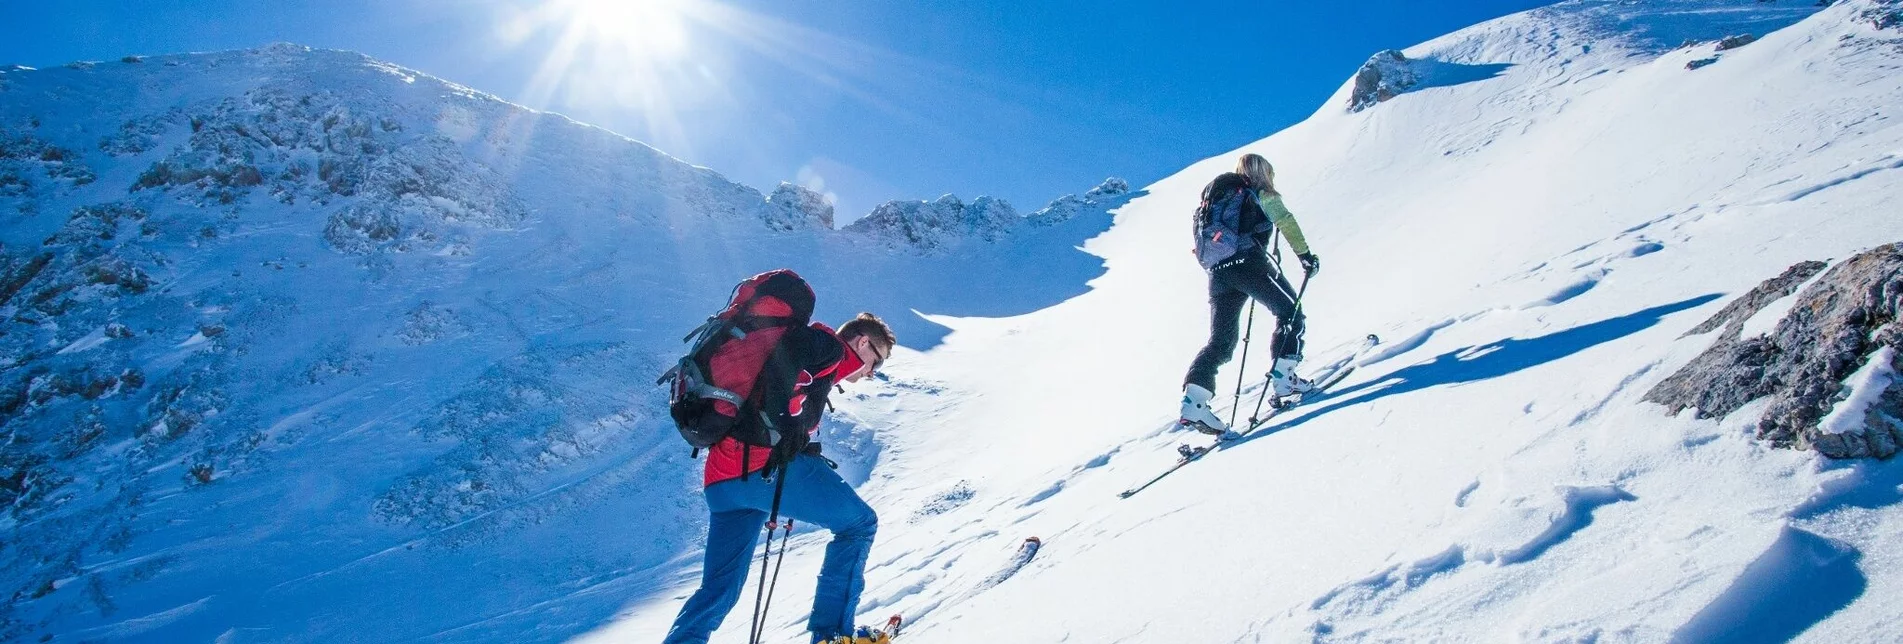 Ski Touring Scheichenspitze - High-Alpine ski tour - Touren-Impression #1 | © Erlebnisregion Schladming-Dachstein